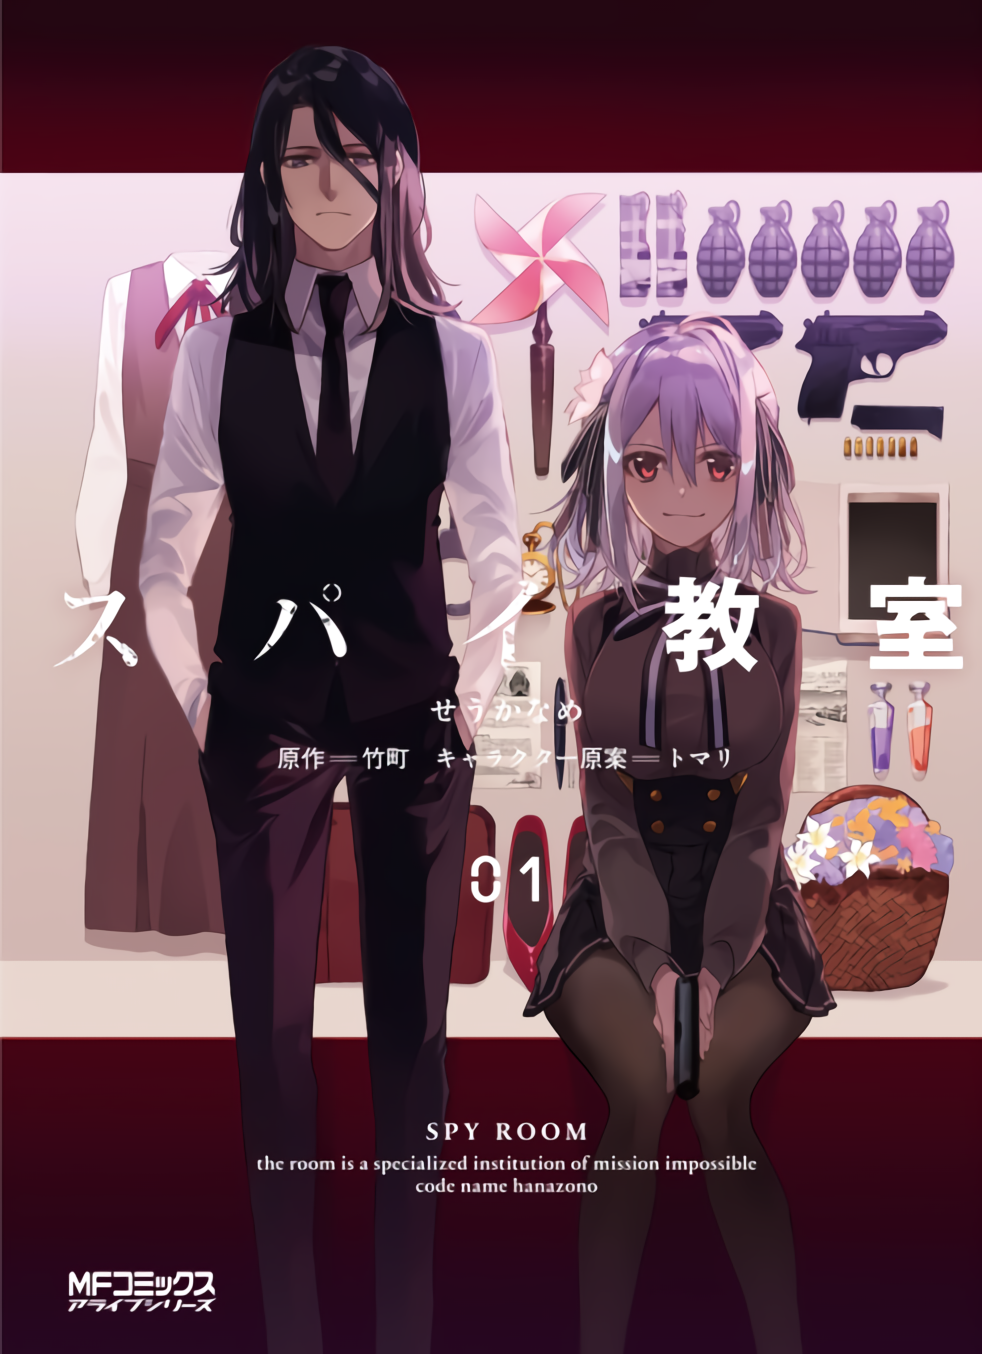 Anime Spy Classroom phát hành PV mới và hình ảnh chính cho Thea, bổ sung  vào bộ sưu tập năm PV và hình ảnh quan trọng cho các nữ điệp viên -